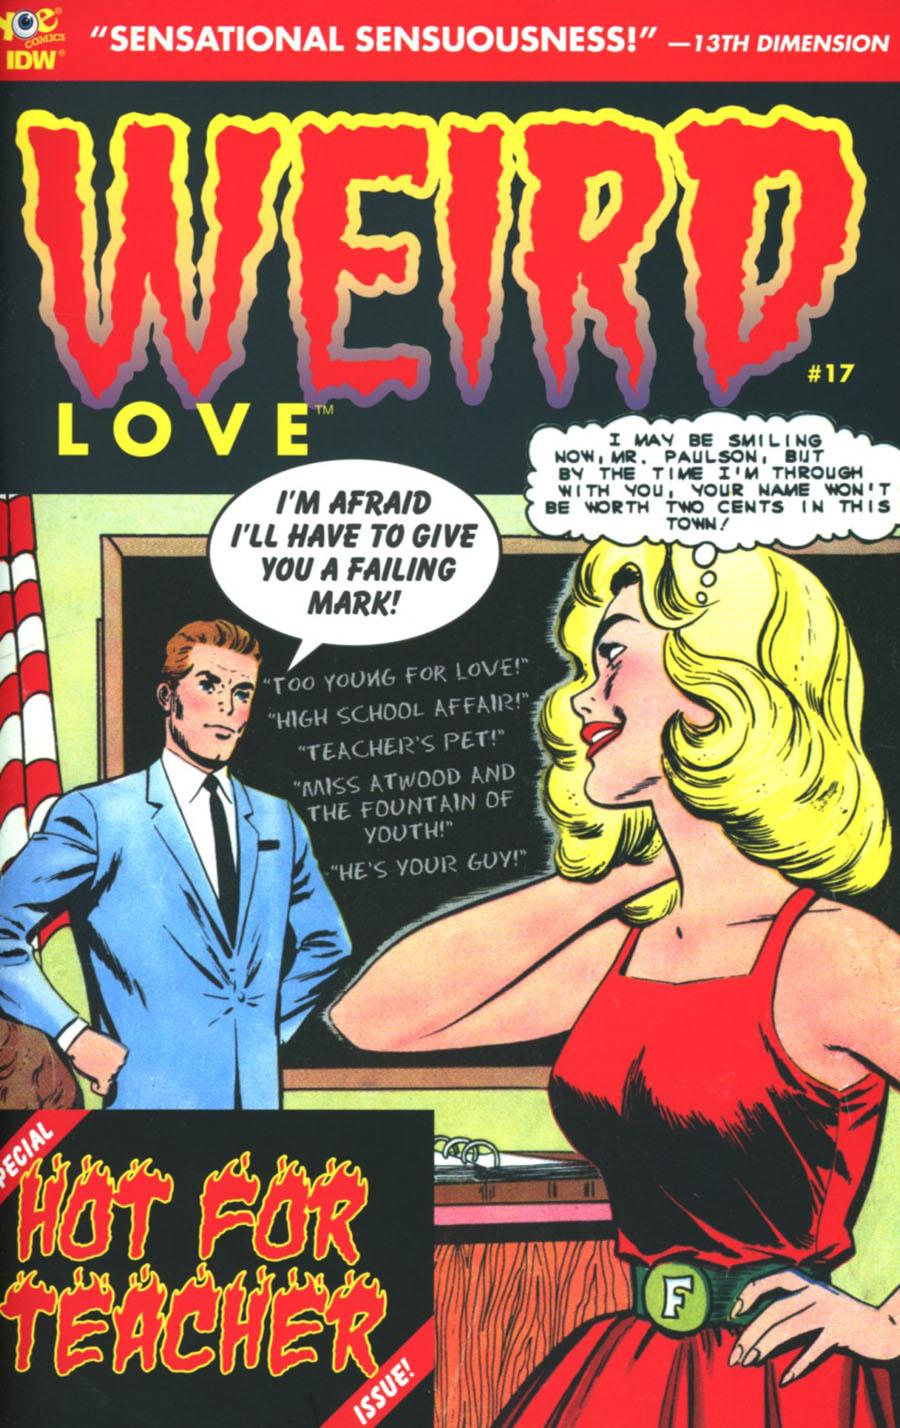 Weird Love Vol. 1 #17